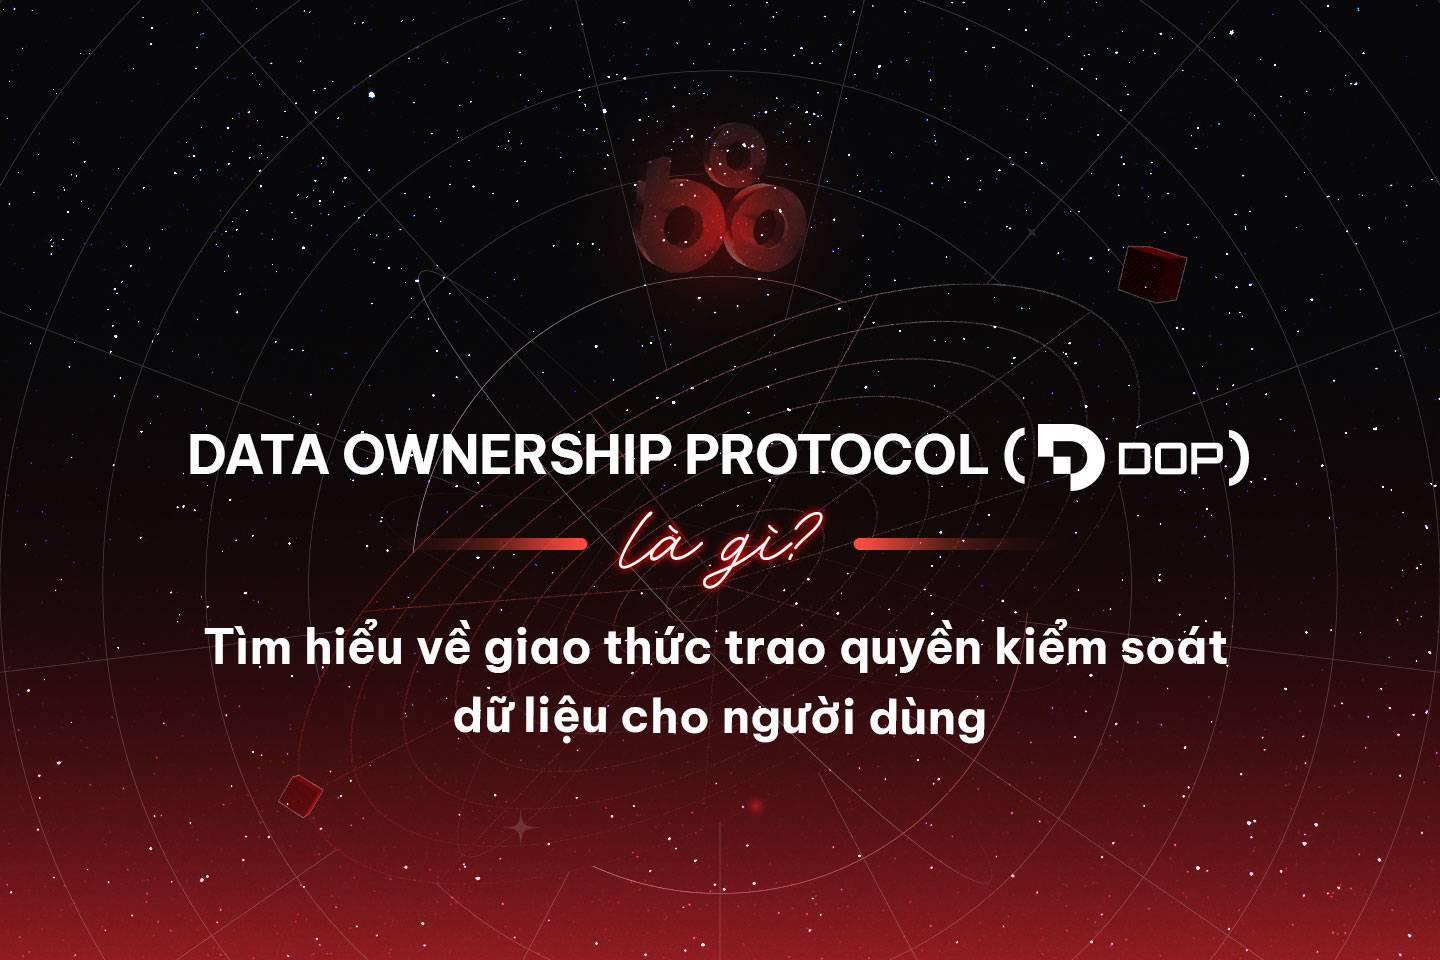 data-ownership-protocol-dop-la-gi-tim-hieu-ve-giao-thuc-trao-quyen-kiem-soat-du-lieu-cho-nguoi-dung